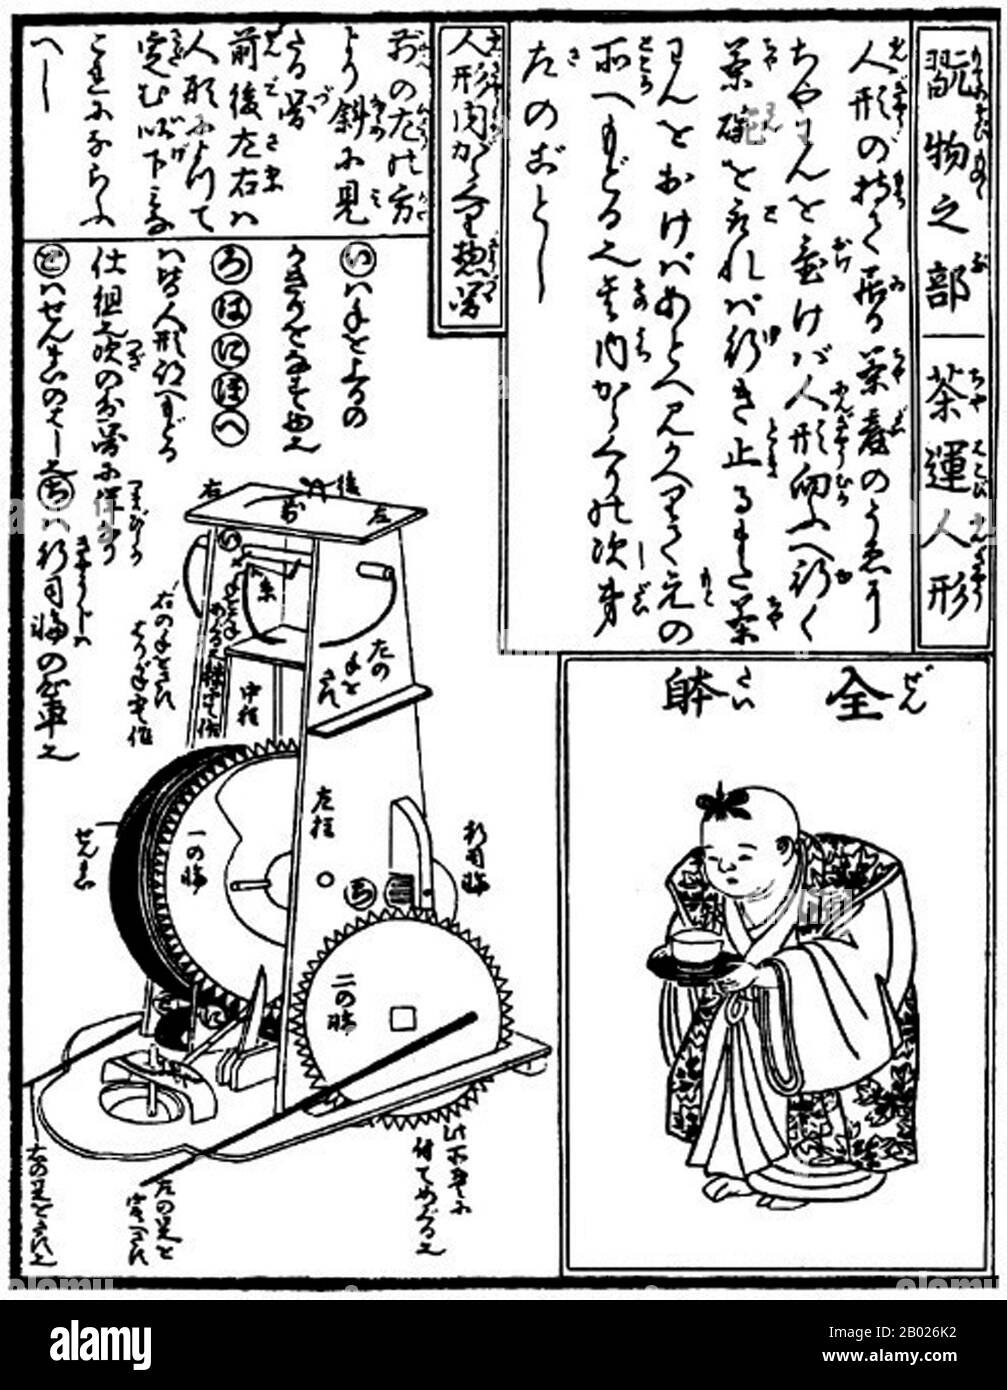 Karakuri-zui è stato scritto da Hosokawa Hanzo Yorinao, ed è stato pubblicato nel periodo Edo (1798). Questo, il più antico manoscritto giapponese di ingegneria meccanica, consiste di tre volumi. Successivamente sono stati ristampati a Osaka e Kyoto. Il compendio illustra in dettaglio la struttura e il processo di costruzione degli orologi (wadokei, jp. 和時計) e automatizzato (Karakuri ningyō, jp. からくり人形) bambole meccaniche, e spiega non solo le tecniche, ma anche lo spirito di fare questi dispositivi meccanici. Foto Stock